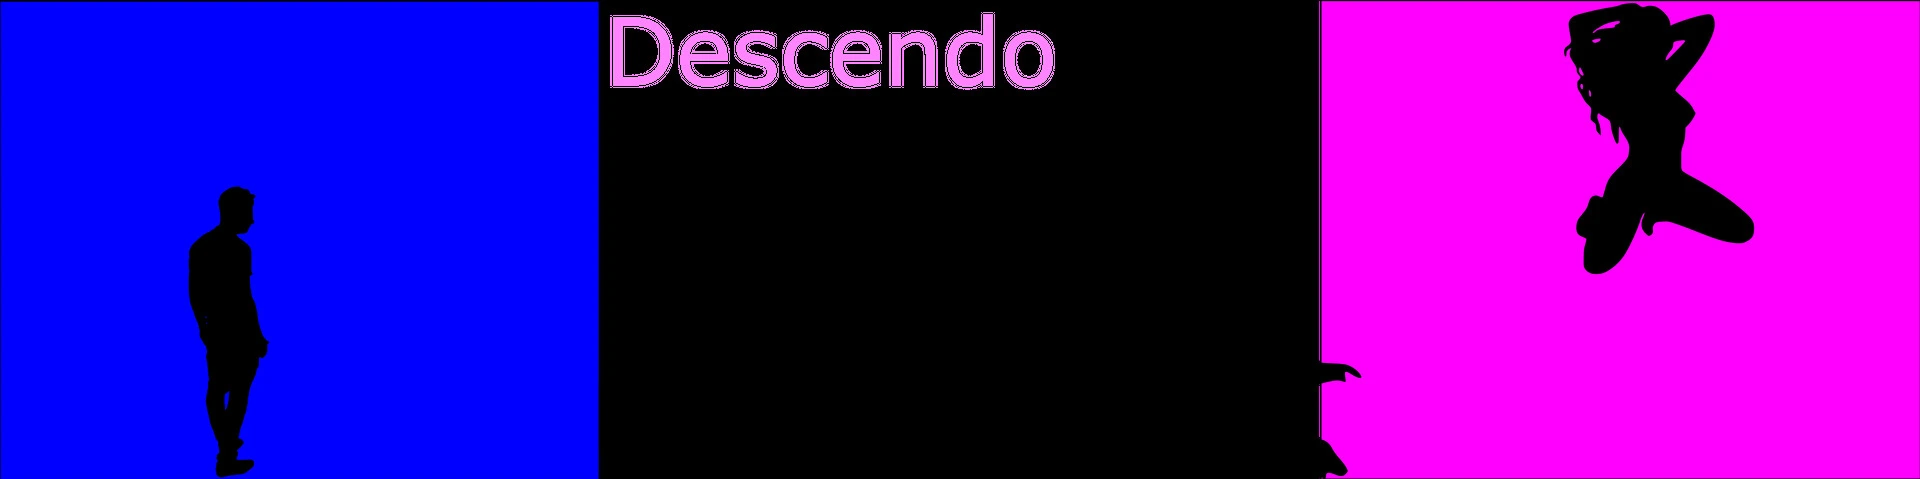 Descendo [v0.3.1] main image